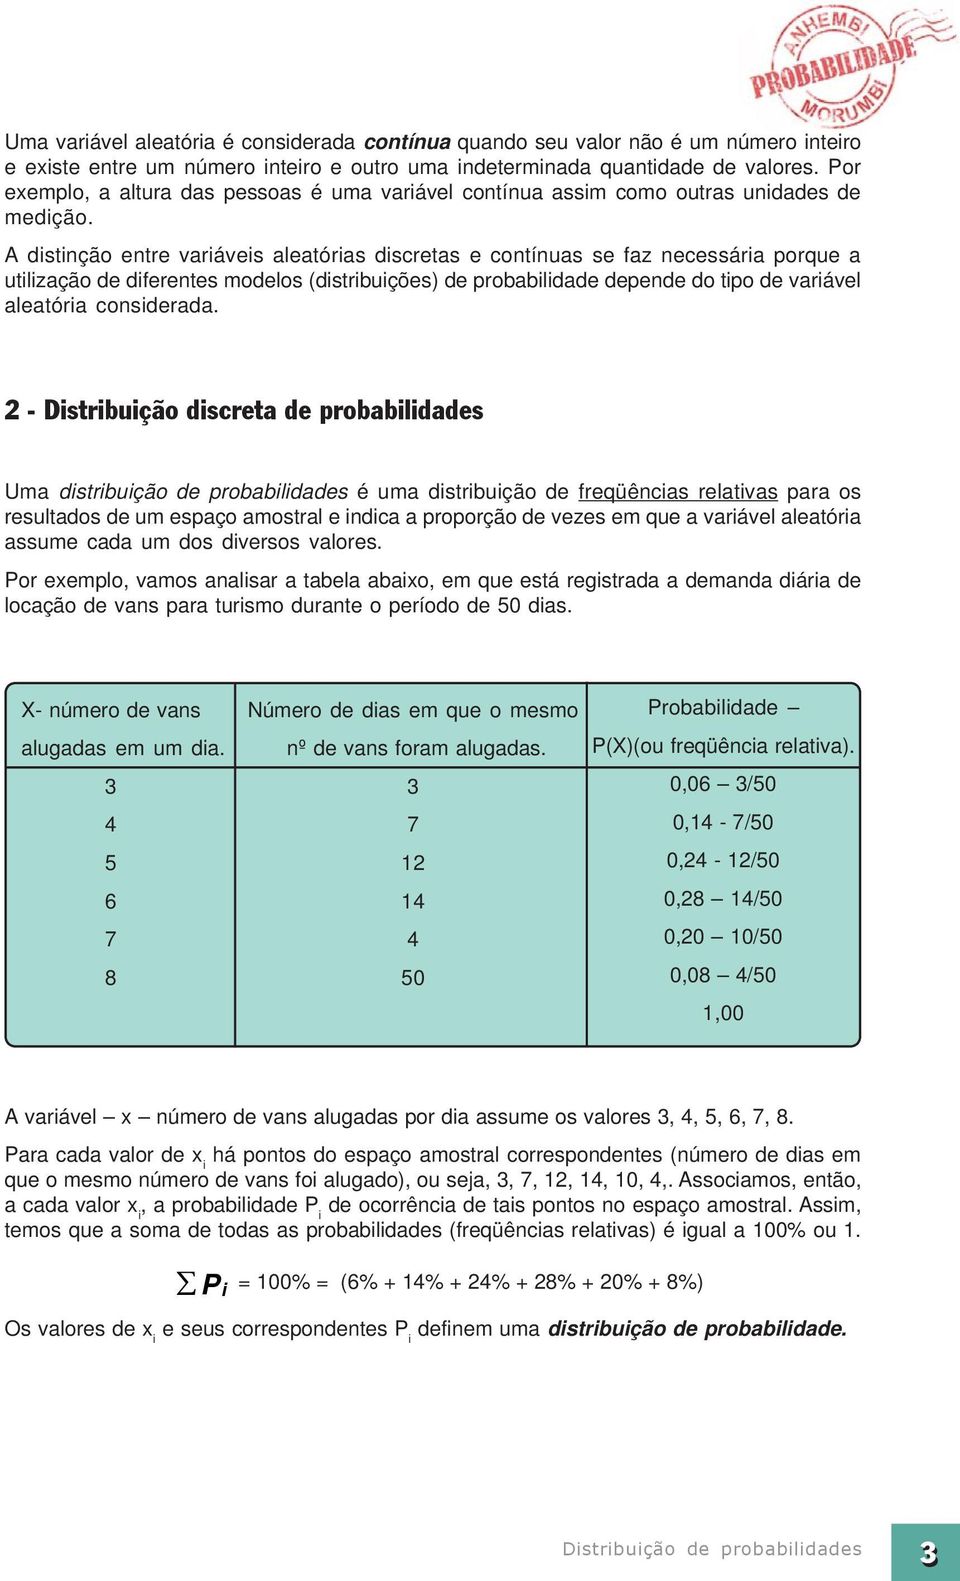 A distinção entre variáveis aleatórias discretas e contínuas se faz necessária porque a utilização de diferentes modelos (distribuições) de probabilidade depende do tipo de variável aleatória